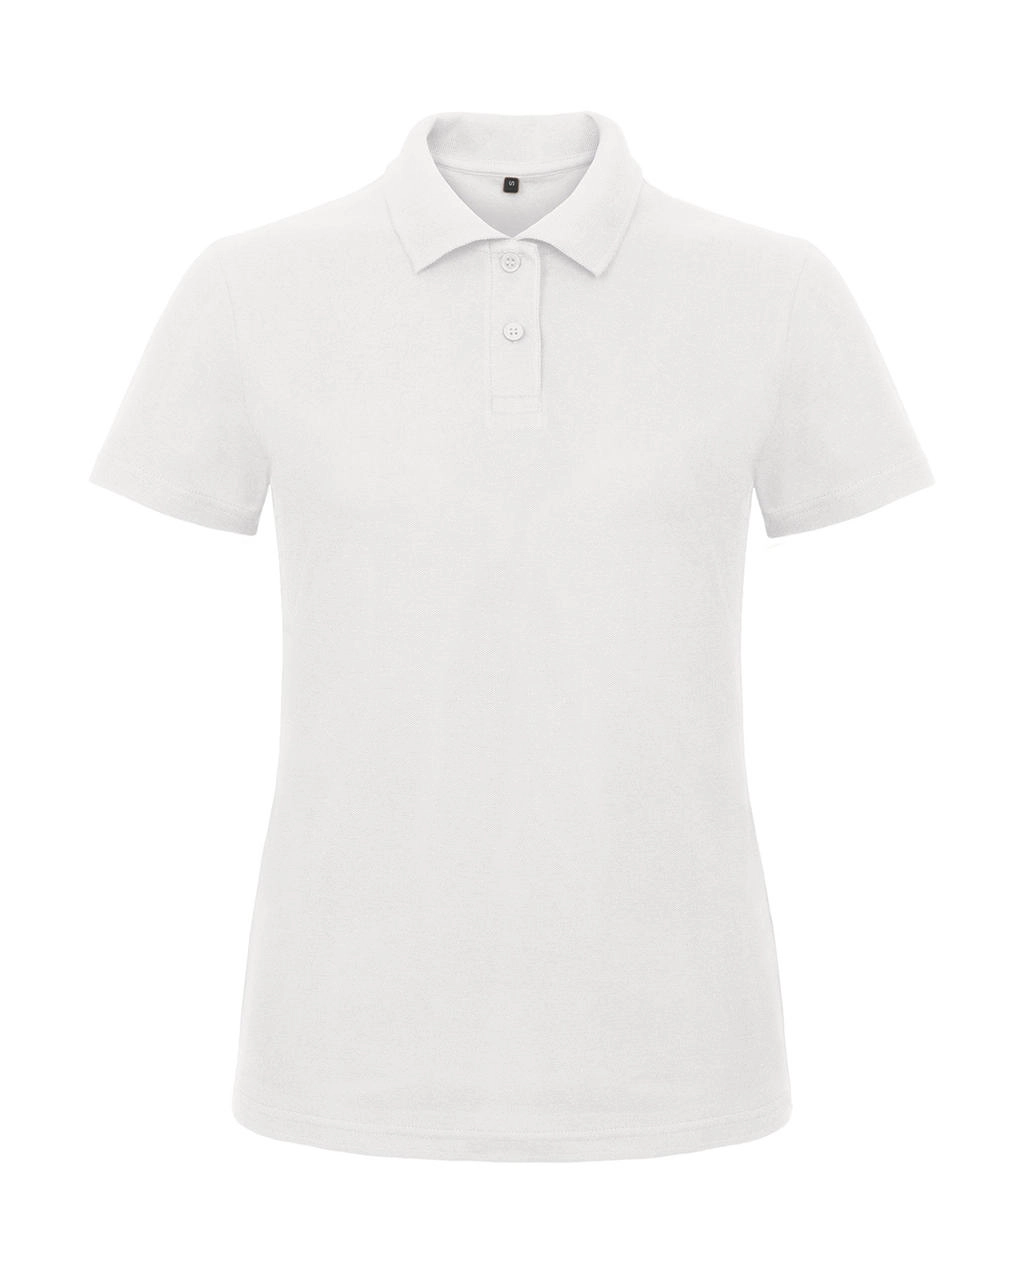 ID.001/women Piqué Polo Shirt zum Besticken und Bedrucken in der Farbe White mit Ihren Logo, Schriftzug oder Motiv.